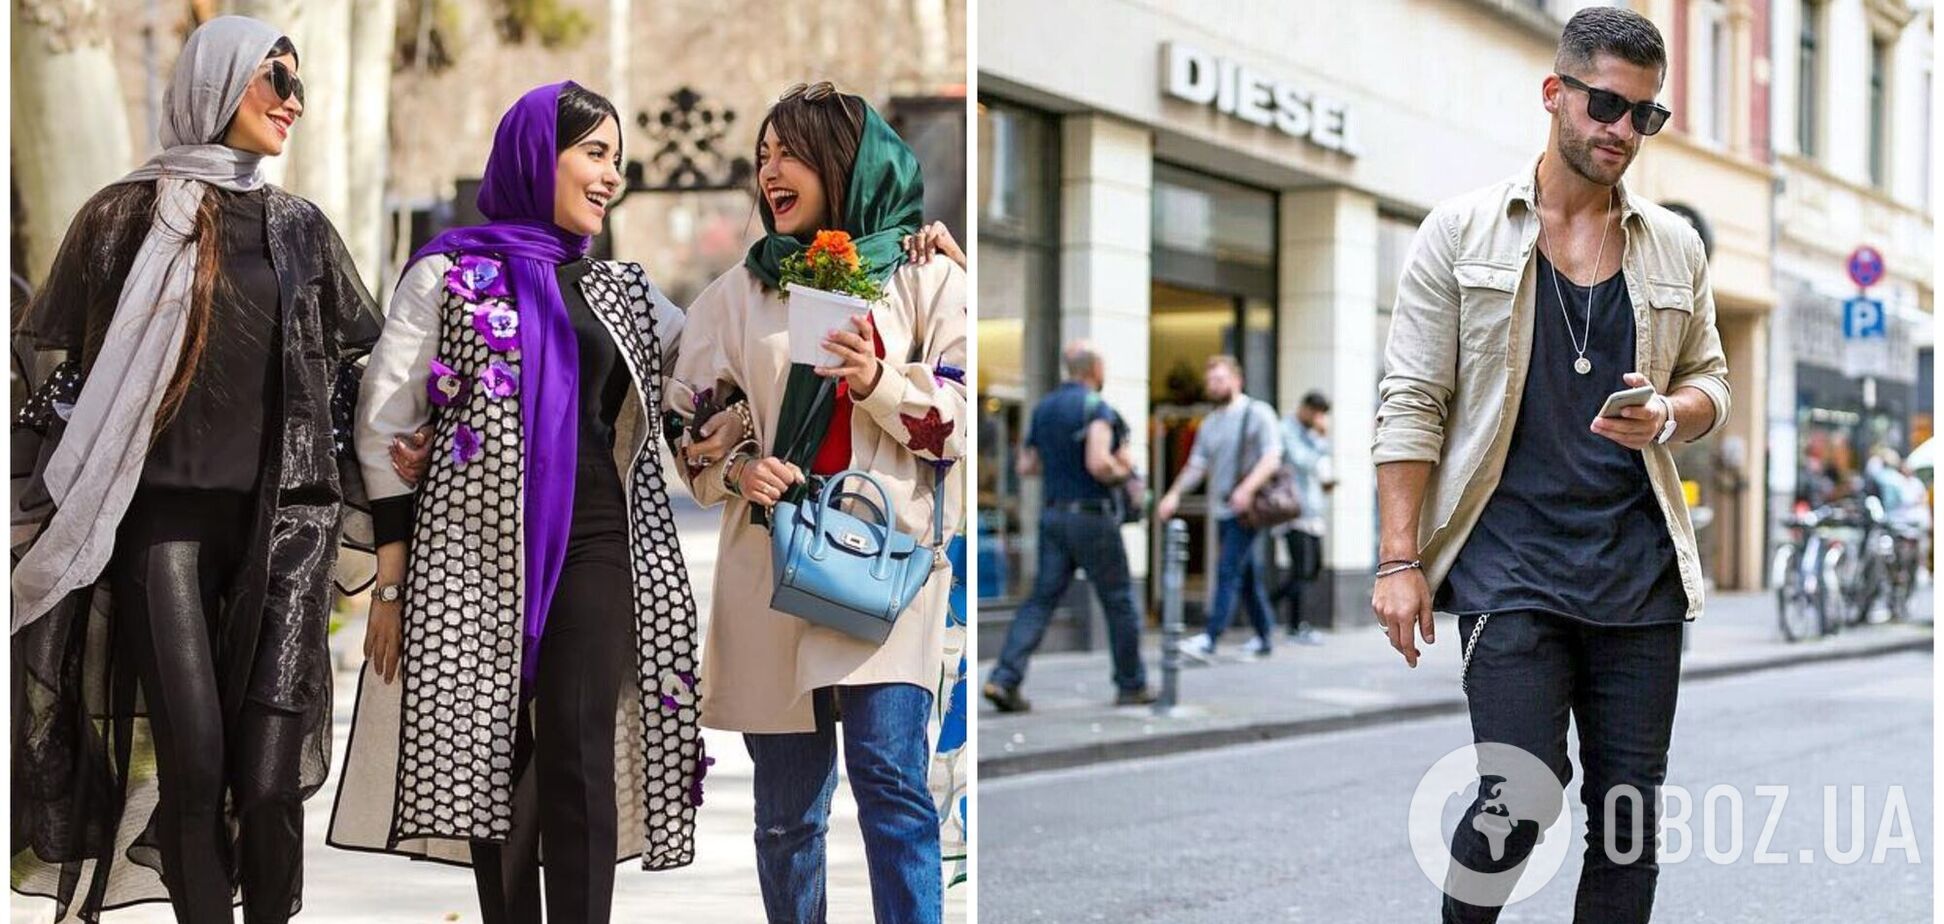 Какую одежду нельзя носить туристам в ОАЭ, Японии, Китае, Франции и других странах. Фото